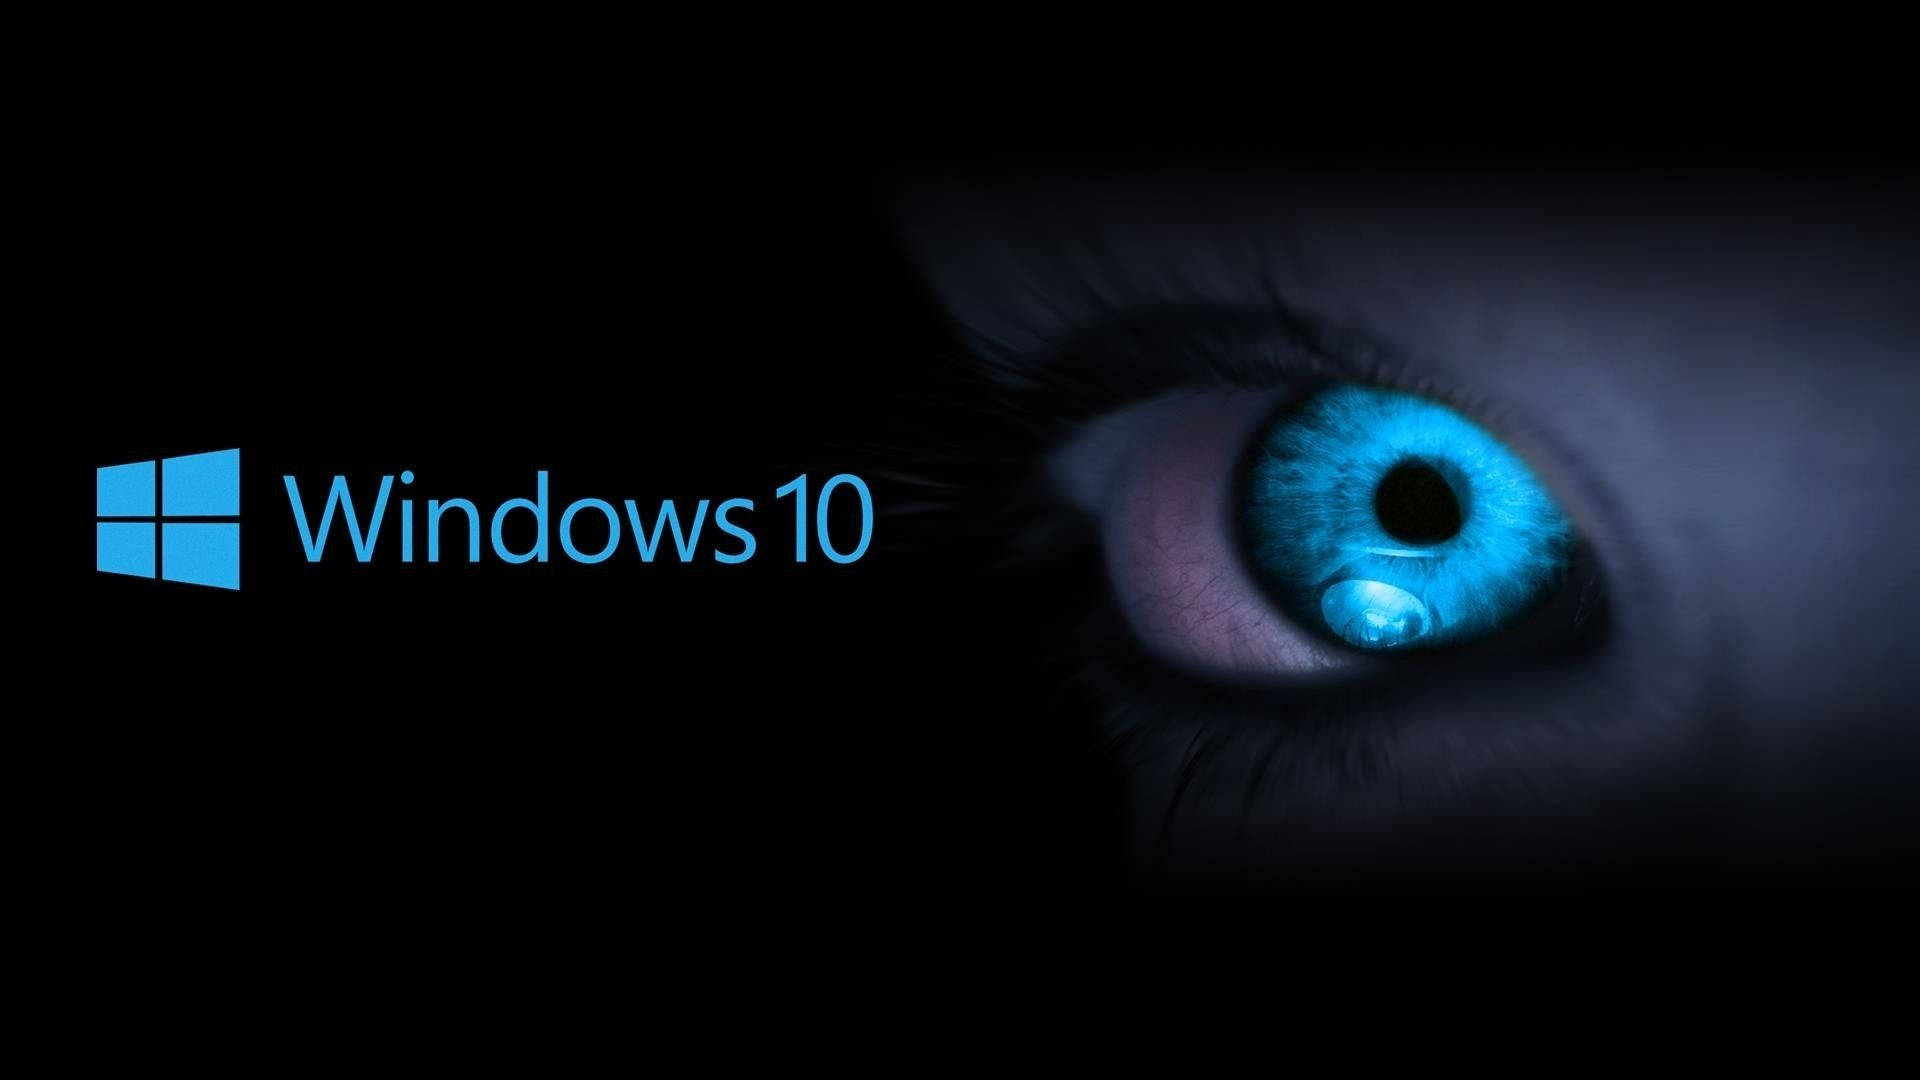 Windows 10 Hd Blue Eye Wallpaper